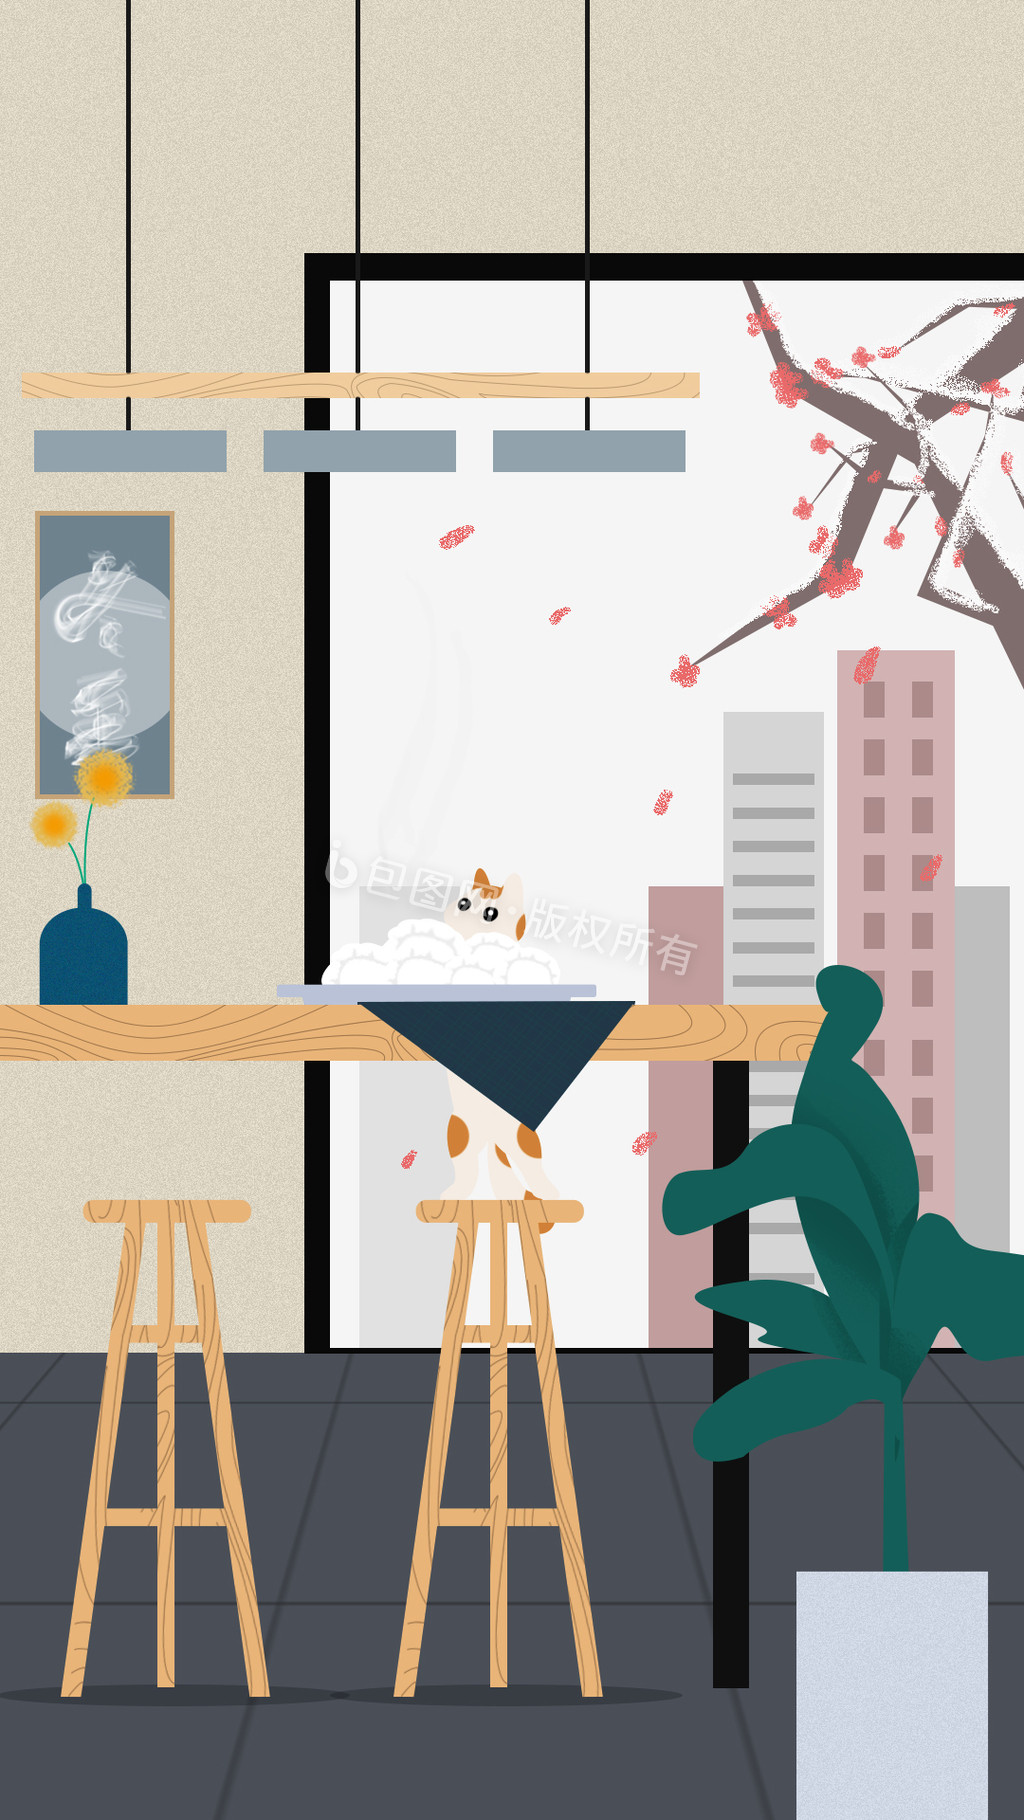 冬至吃饺子猫咪室内桌子绿植插画动图GIF图片